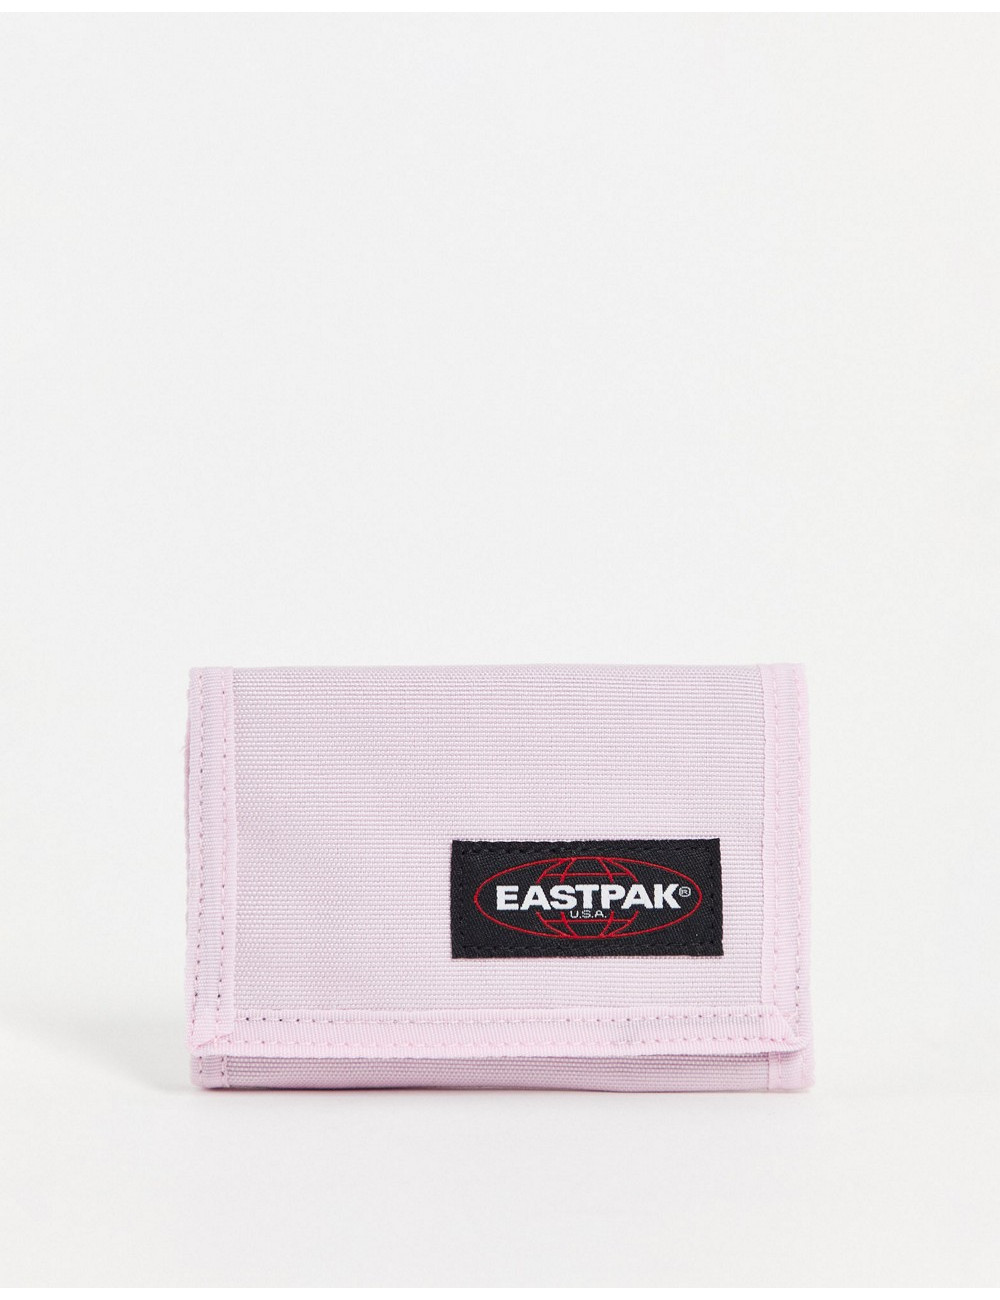 Eastpak crew single purse...